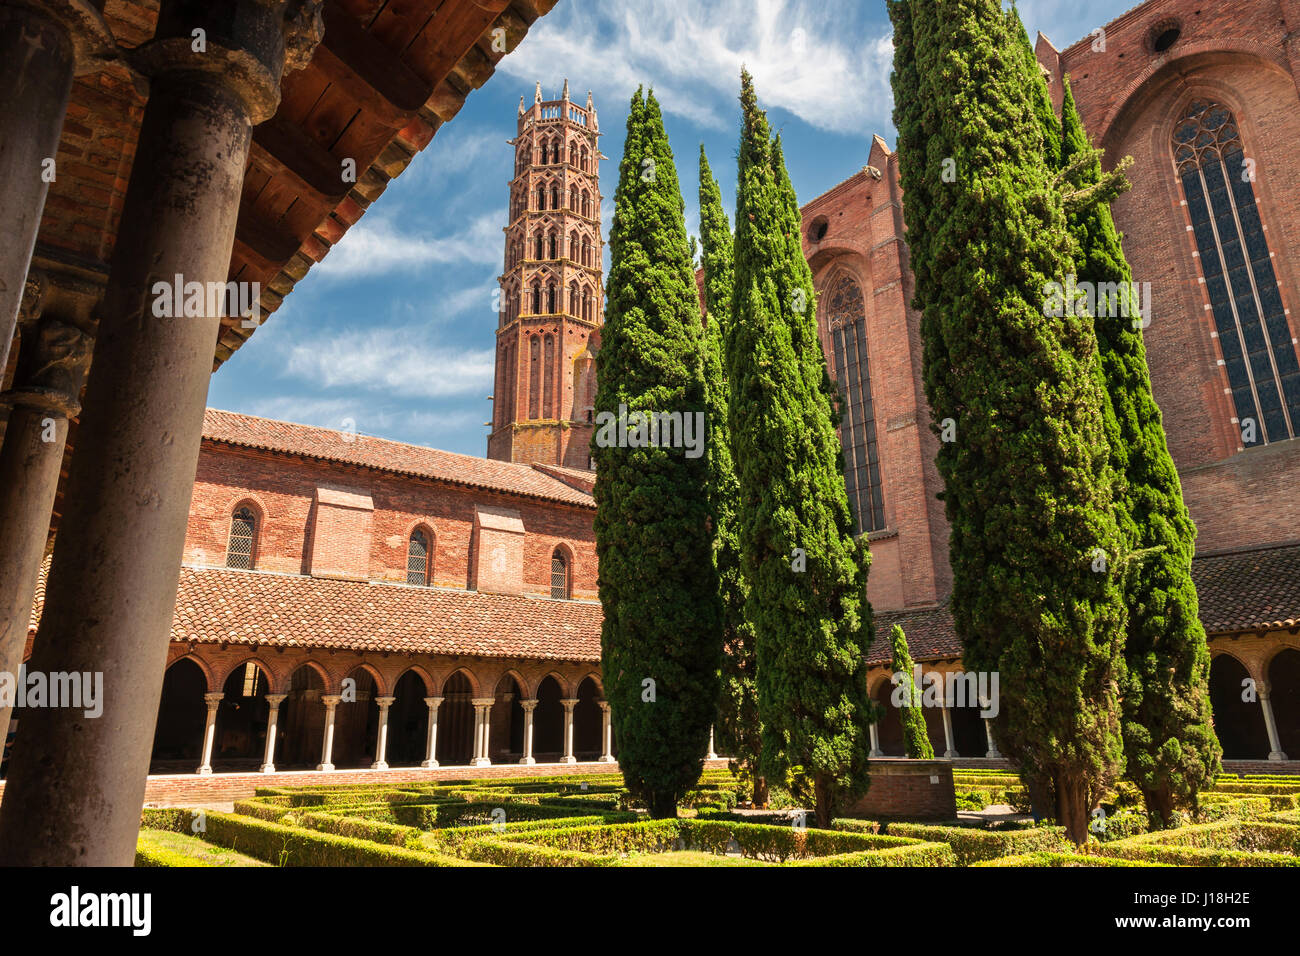 Kreuzgang und Garten im Innenhof des dominikanischen Kloster Couvent des Jacobins in Toulouse, Frankreich. Stockfoto